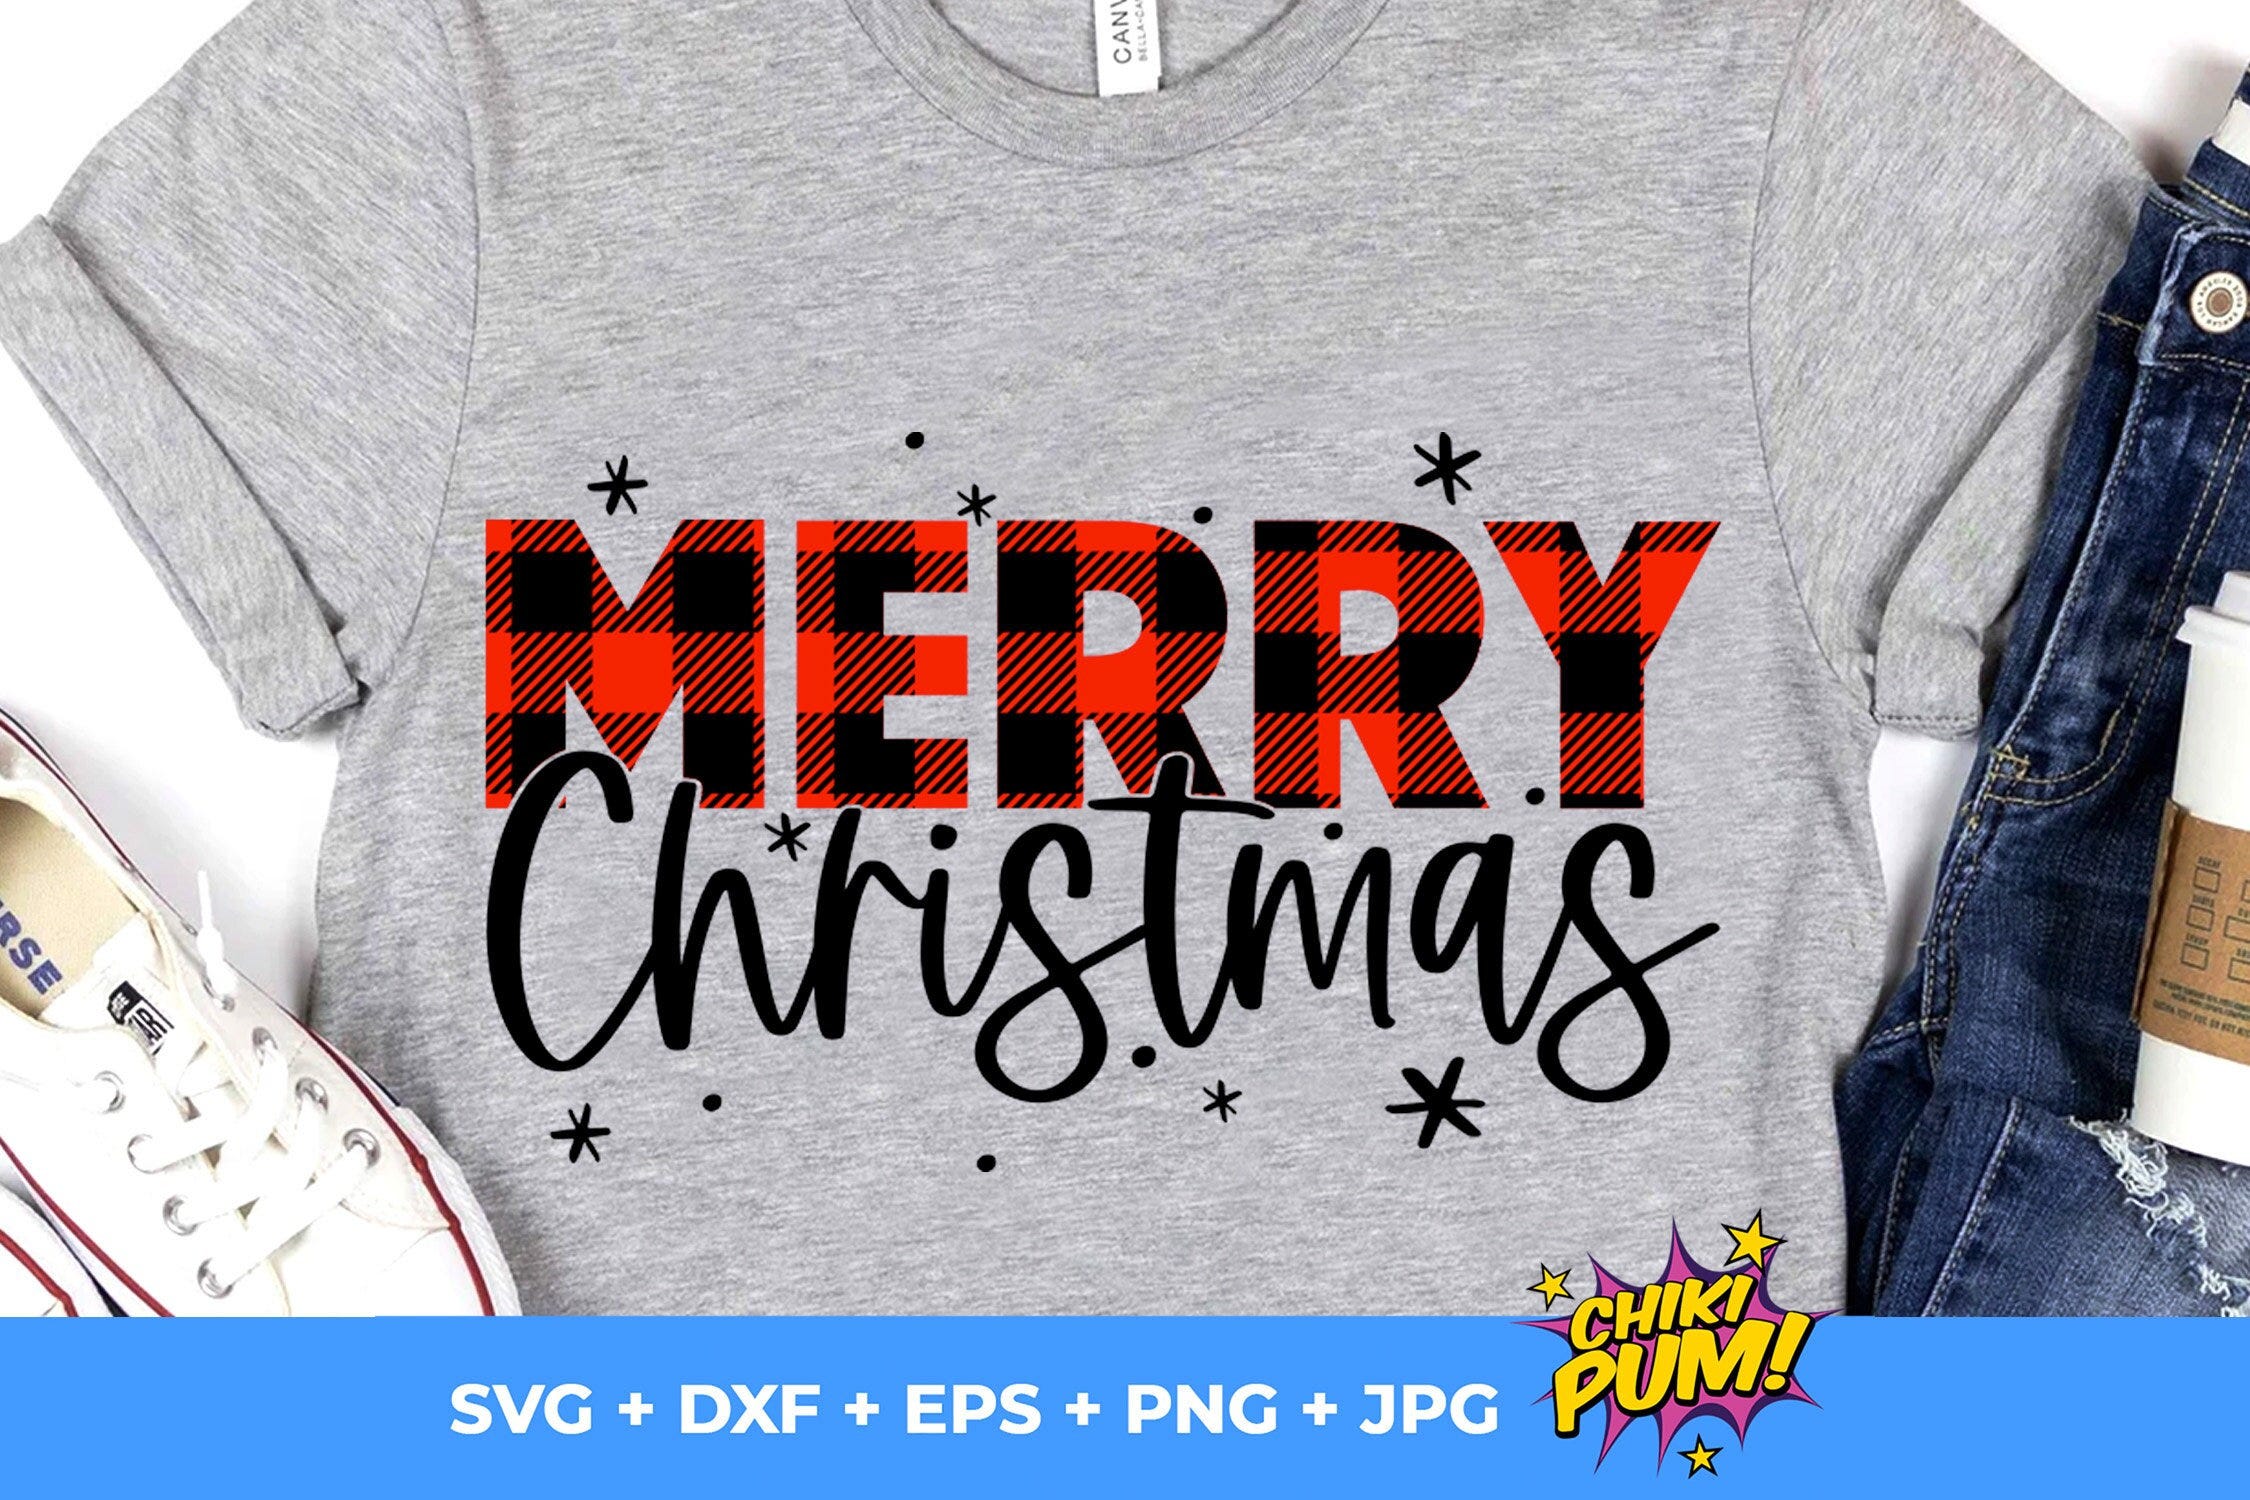 Merry Christmas SVG, Plaid Christmas SVG, Christmas SVG, Christmas Cricut svg, Christmas Silhouette